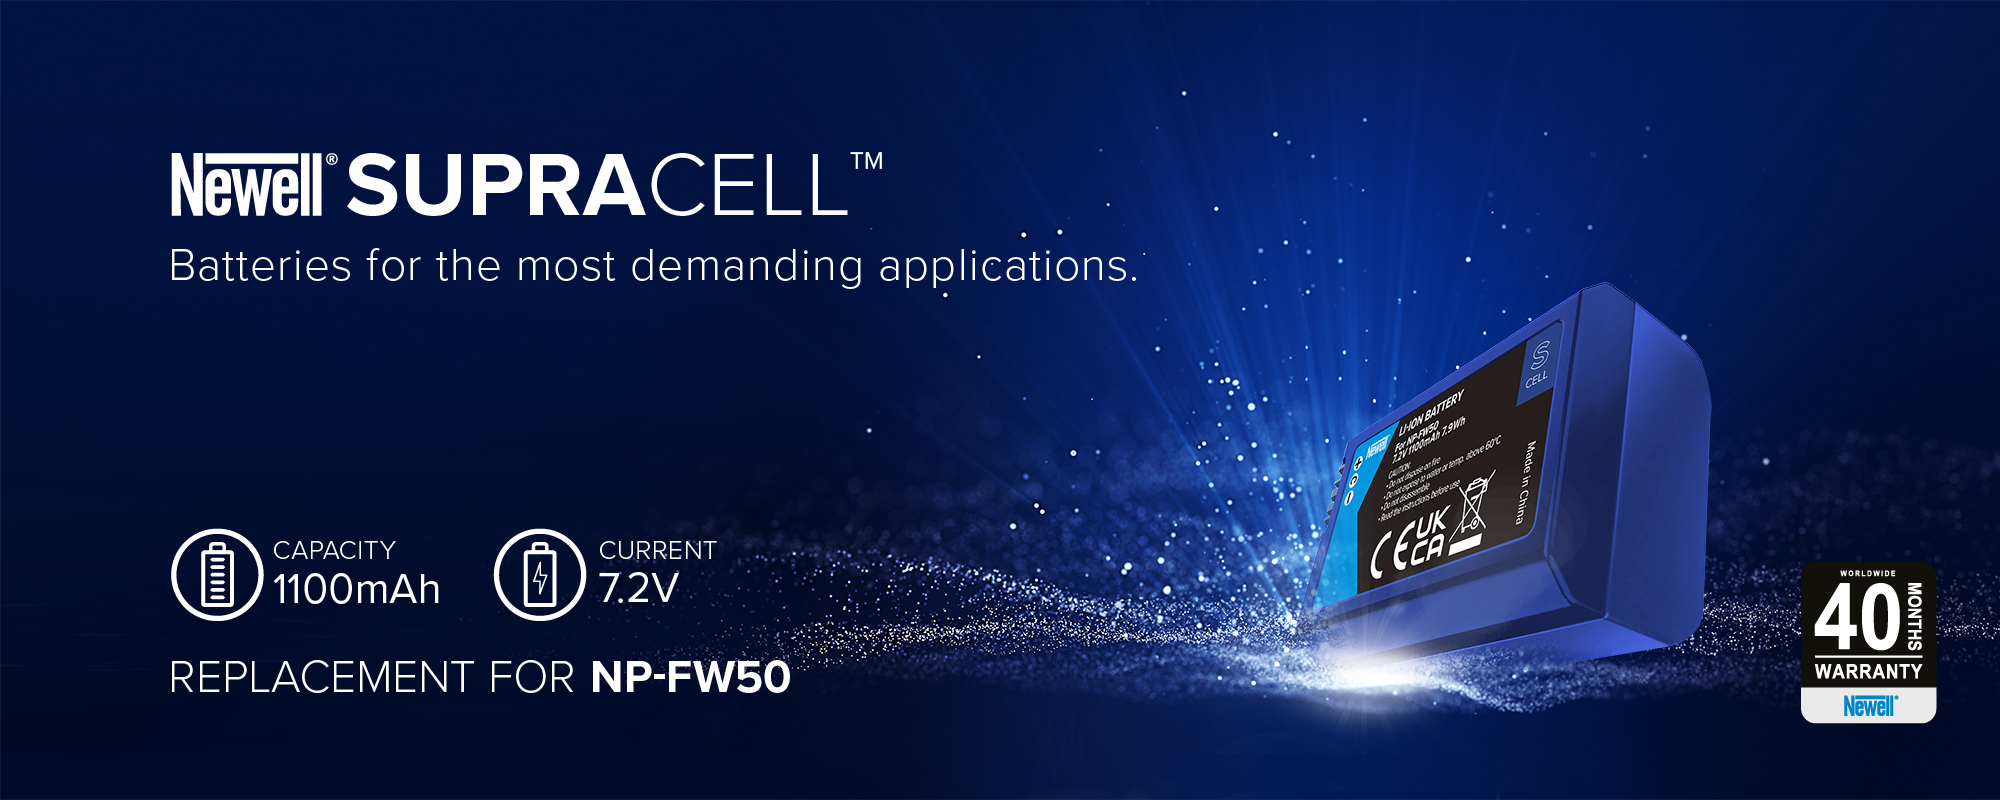 Akumulator zastępczy Newell SupraCell Protect NP-FW50 do Sony